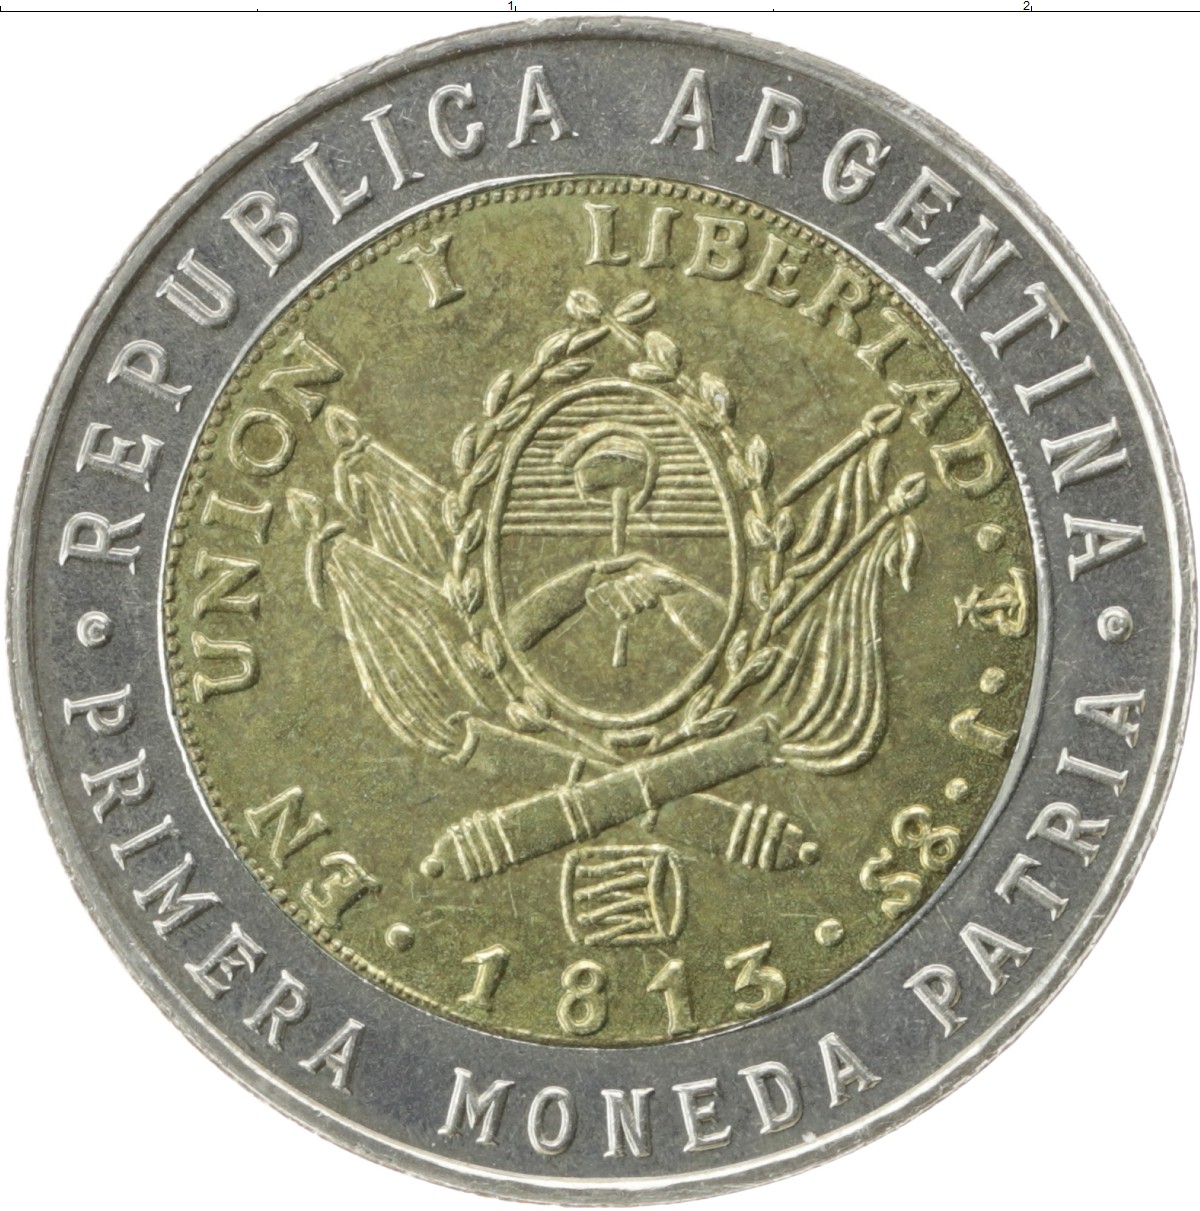 1995 Peso Coin Value